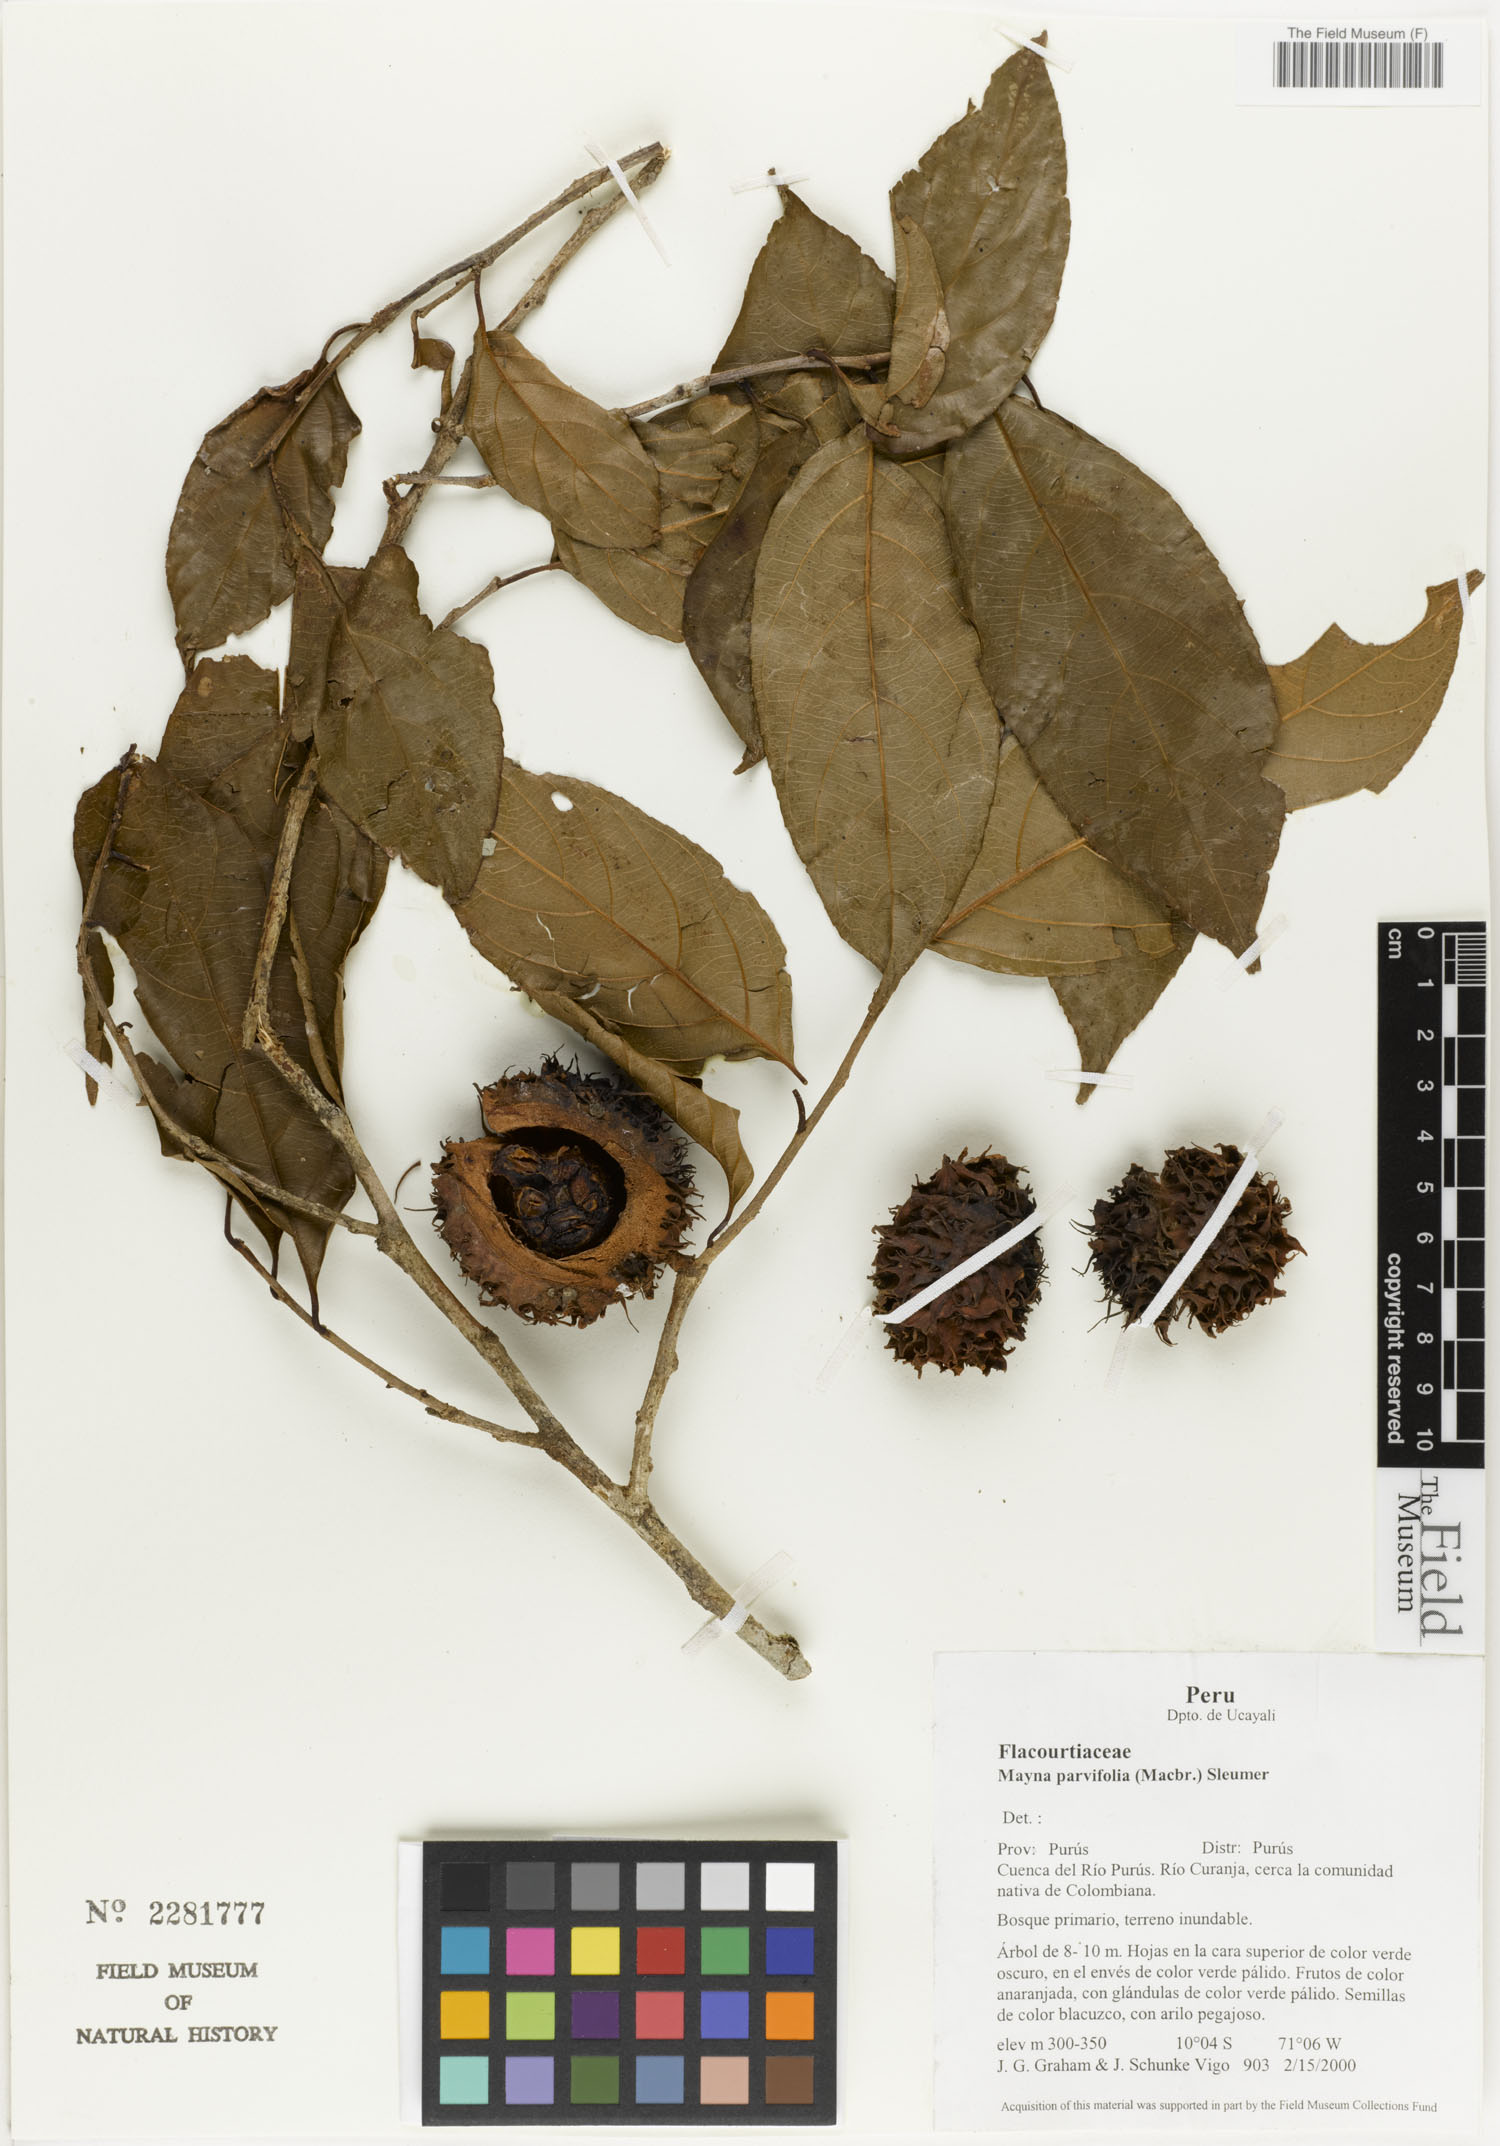 Mayna parvifolia image